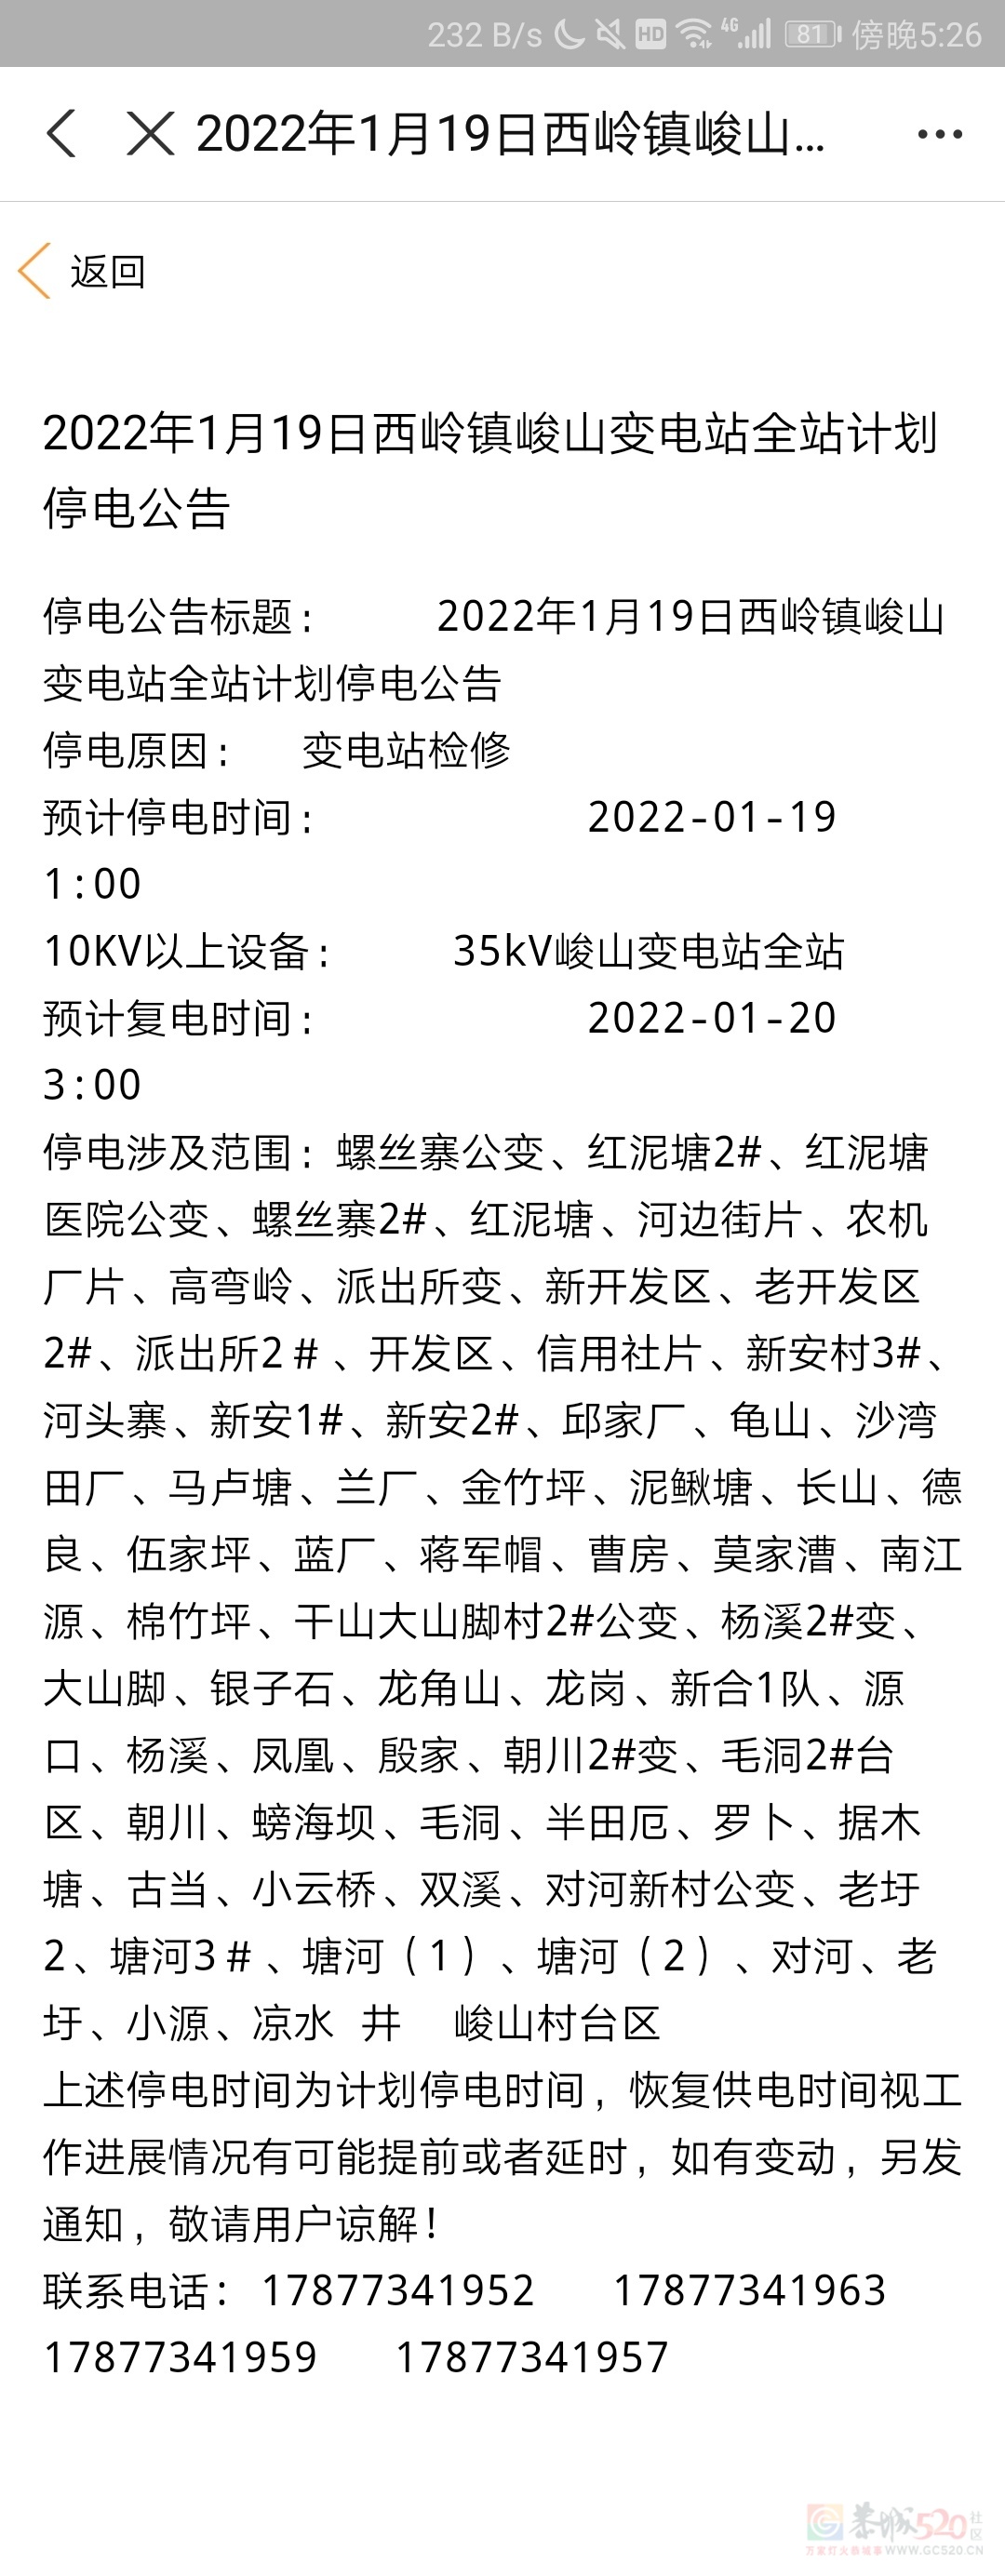 2022年1月19日西岭镇峻山变电站全站计划停电公告392 / 作者:遗憾太多了 / 帖子ID:292109